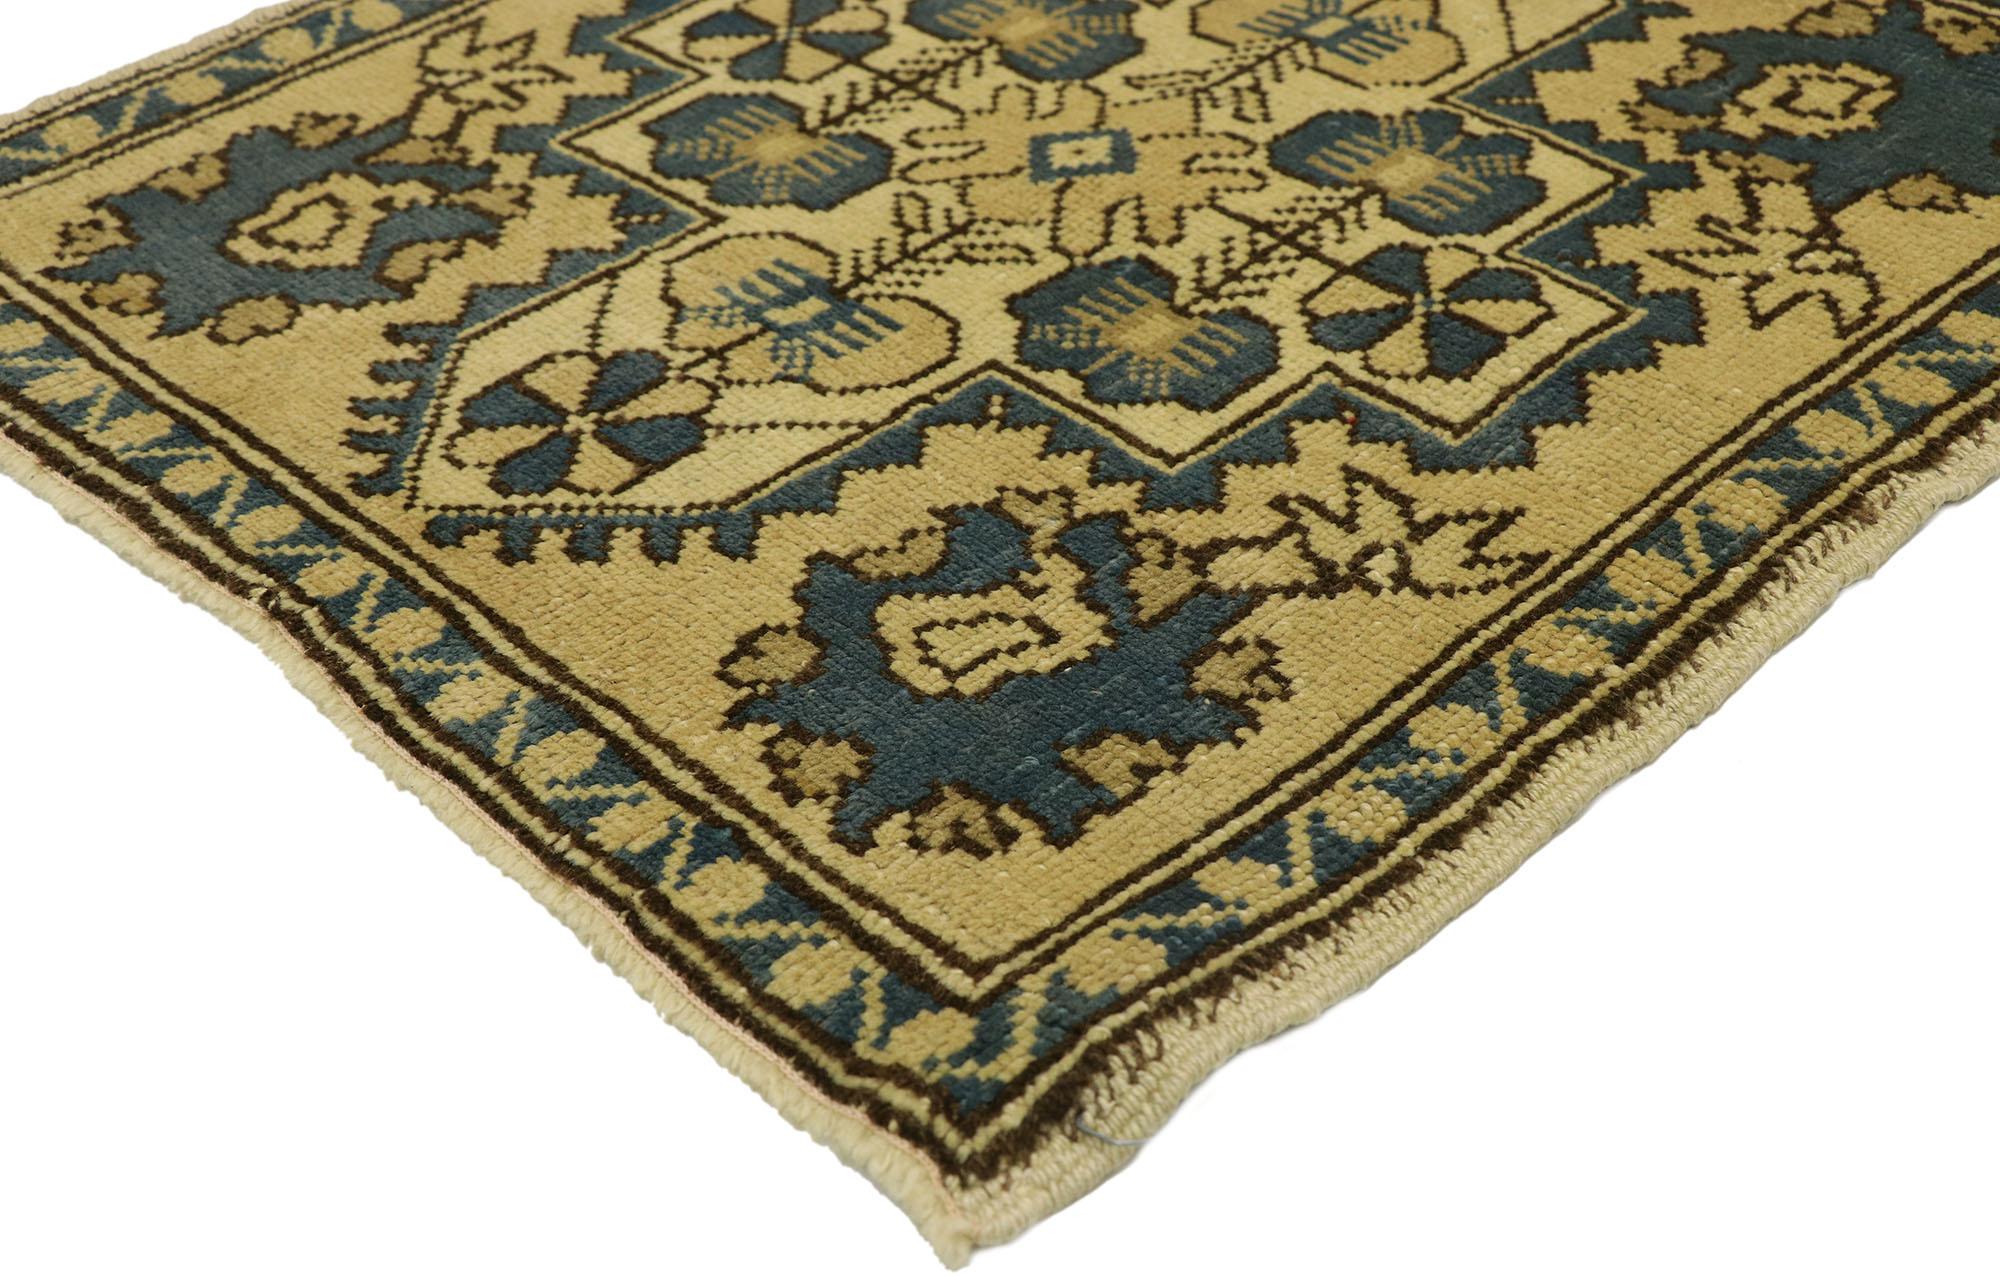 51259 Türkischer Yastik-Teppich Vintage, 02'03 x 02'04. In diesem handgeknüpften türkischen Yastik-Teppich aus Wolle vereinen sich mühelose Anmut und subtile Raffinesse zu einem fesselnden Stück mit einem Hauch von mediterranem Charme. Die